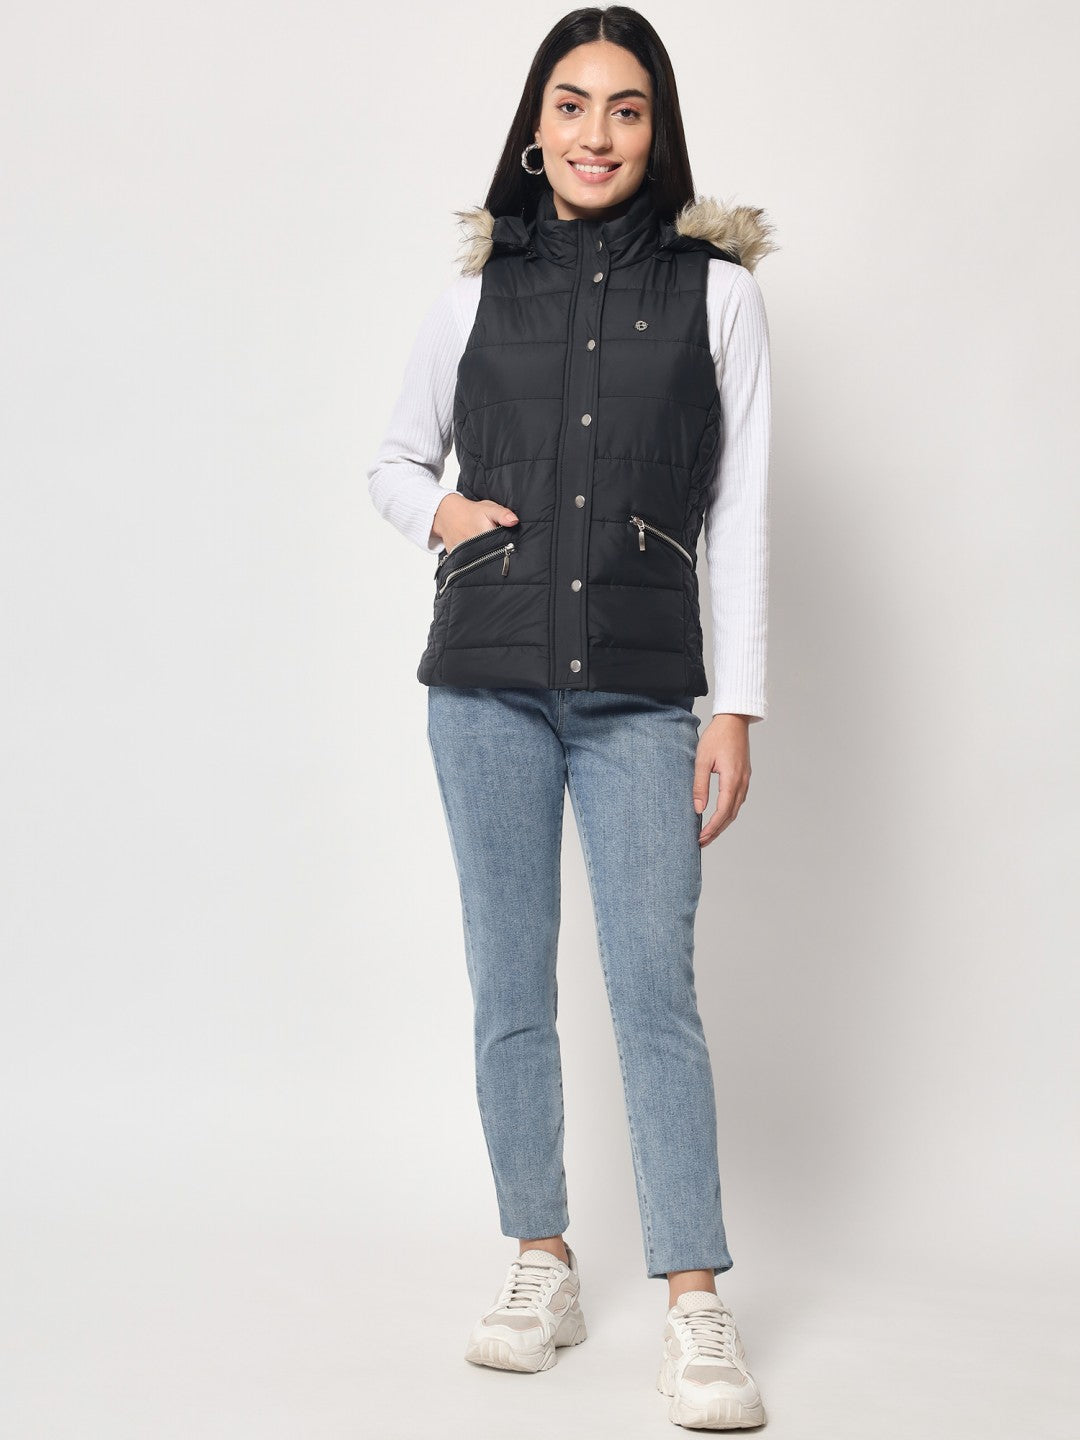 Drindf sleeveless denim jacket for women plus size lapel India | Ubuy